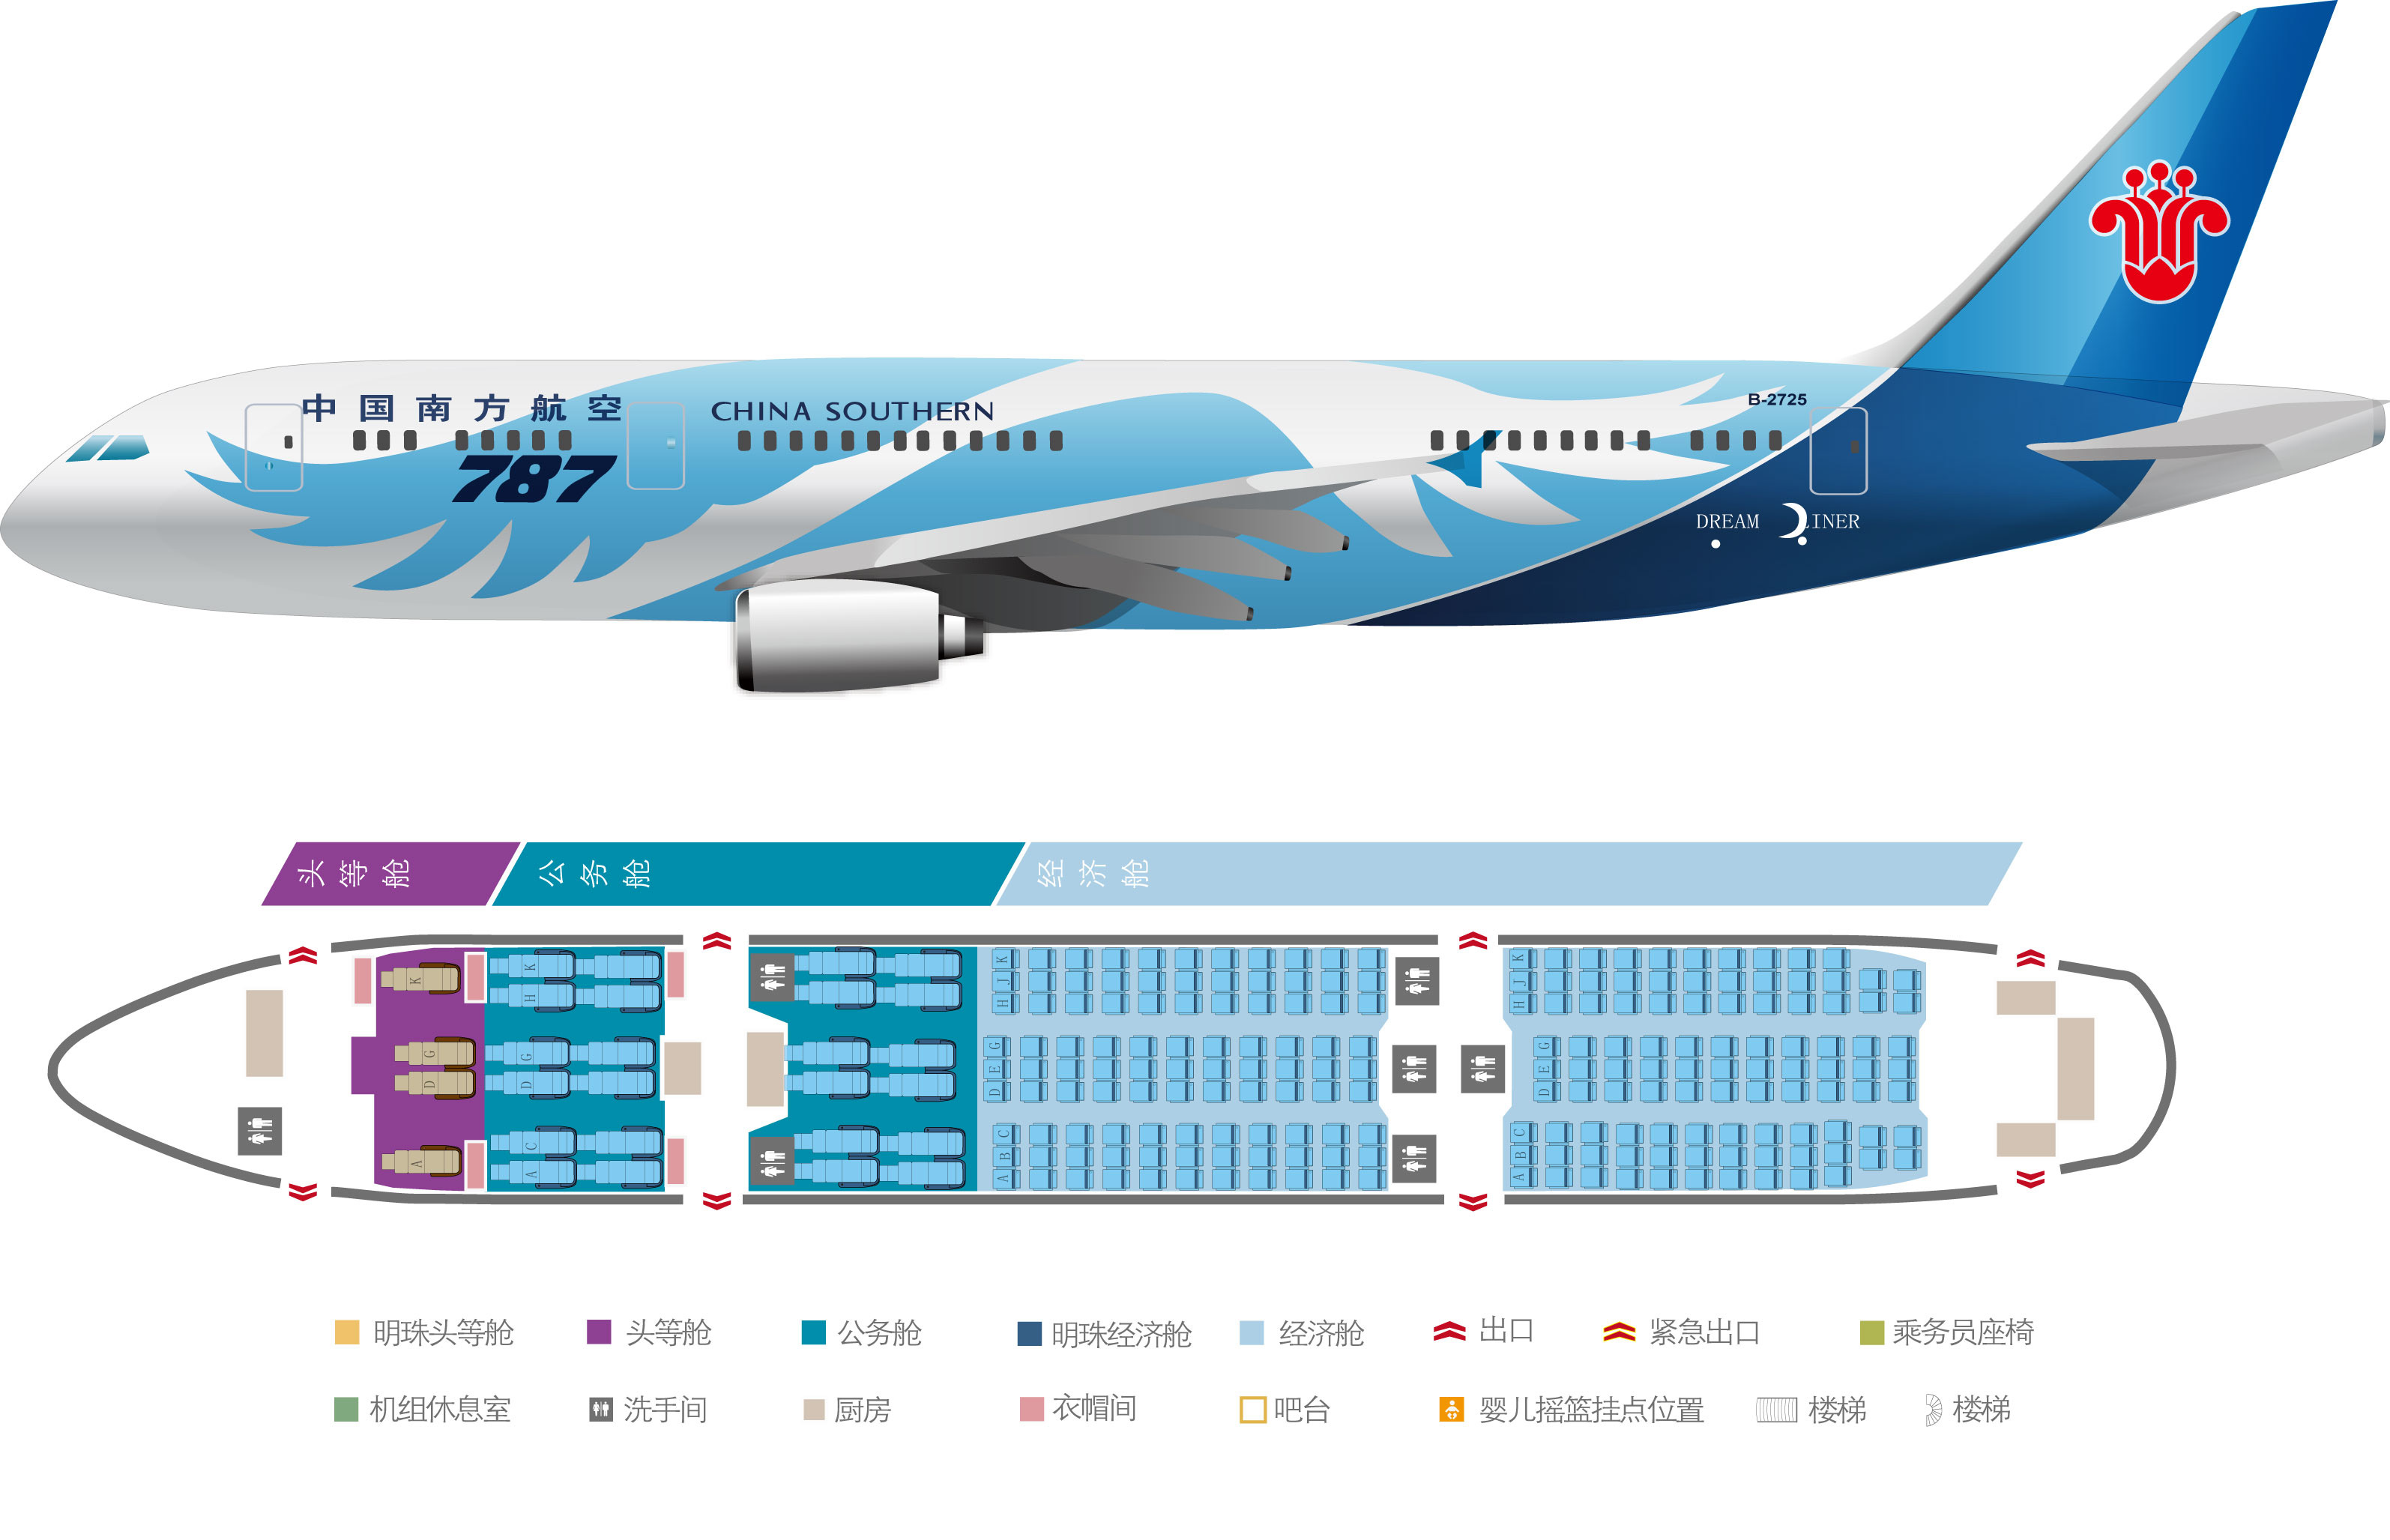 吉祥航空空客321座位图 - 首都航空a321飞机座位分布图 - 实验室设备网